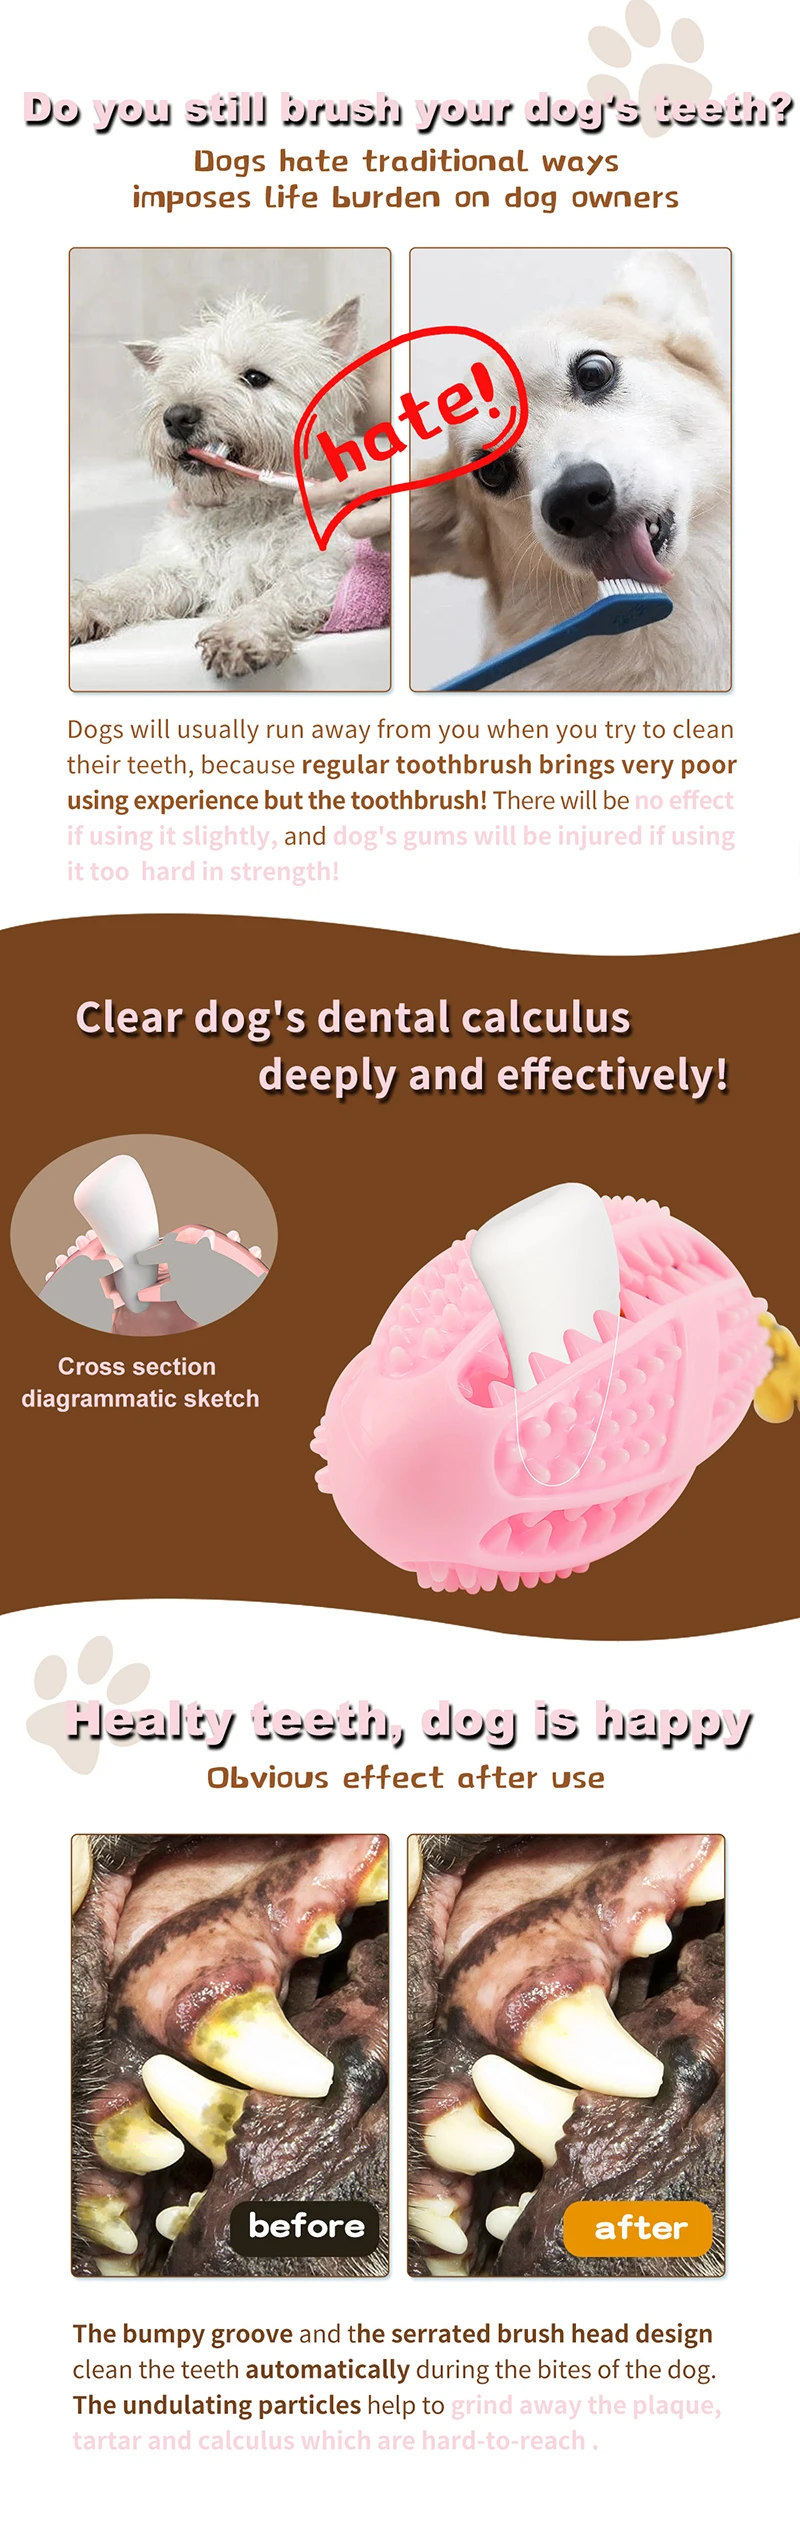 Товары для домашних животных собачий тренировочный корм мяч TPR материал интерактивная игрушка для домашней собаки щенка дозатор для еды собака зубная щетка жевательная игрушка